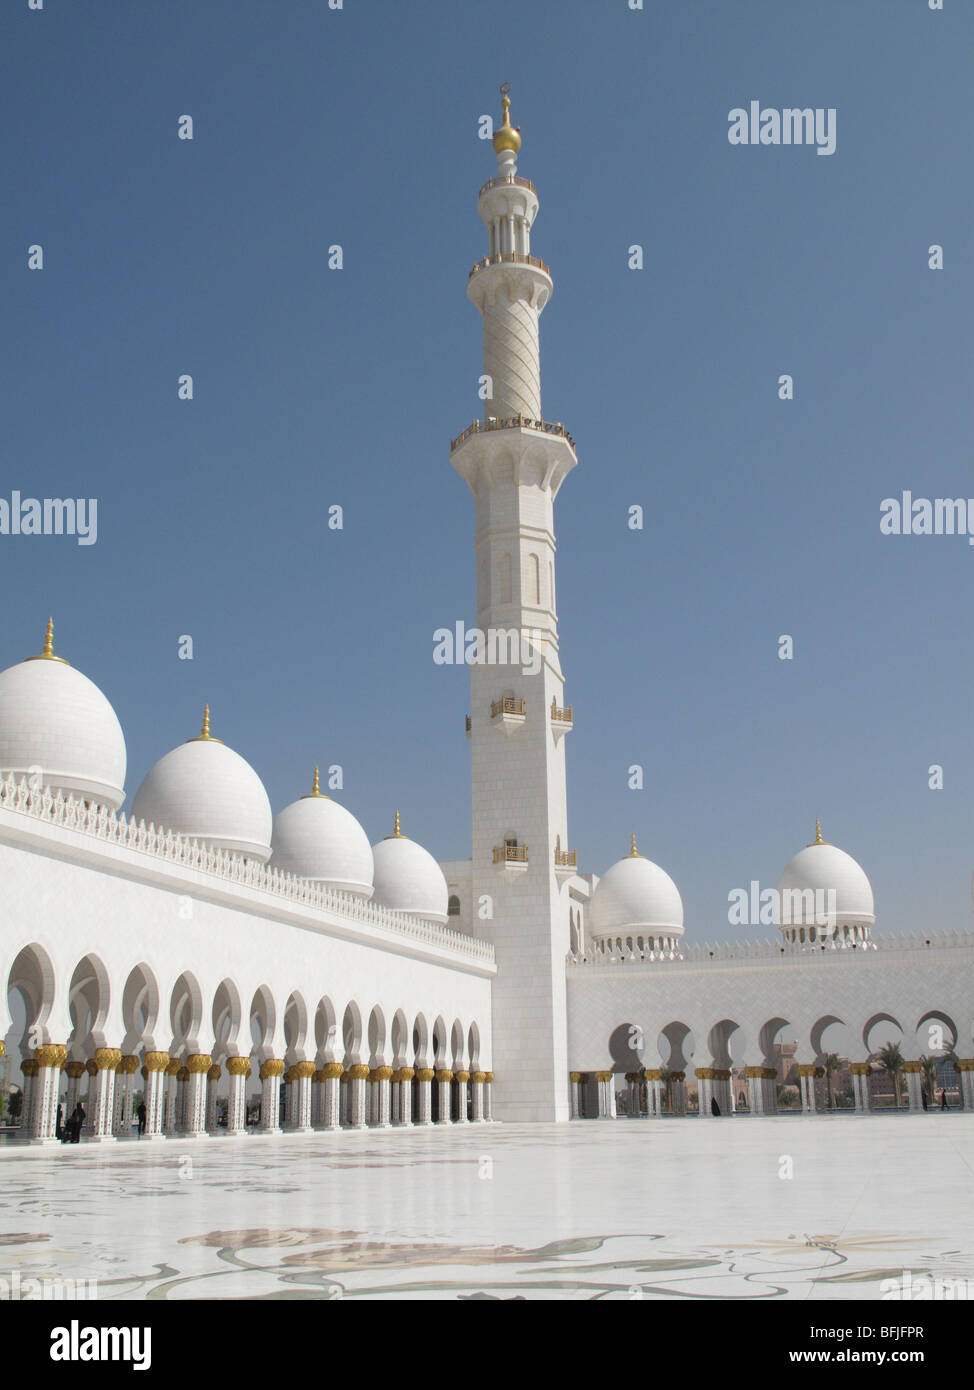 Minarett, la cupola e la passeggiata di Sheikh Zayed Bin Sultan Al Nahyan, la Moschea di Abu Dhabi Foto Stock